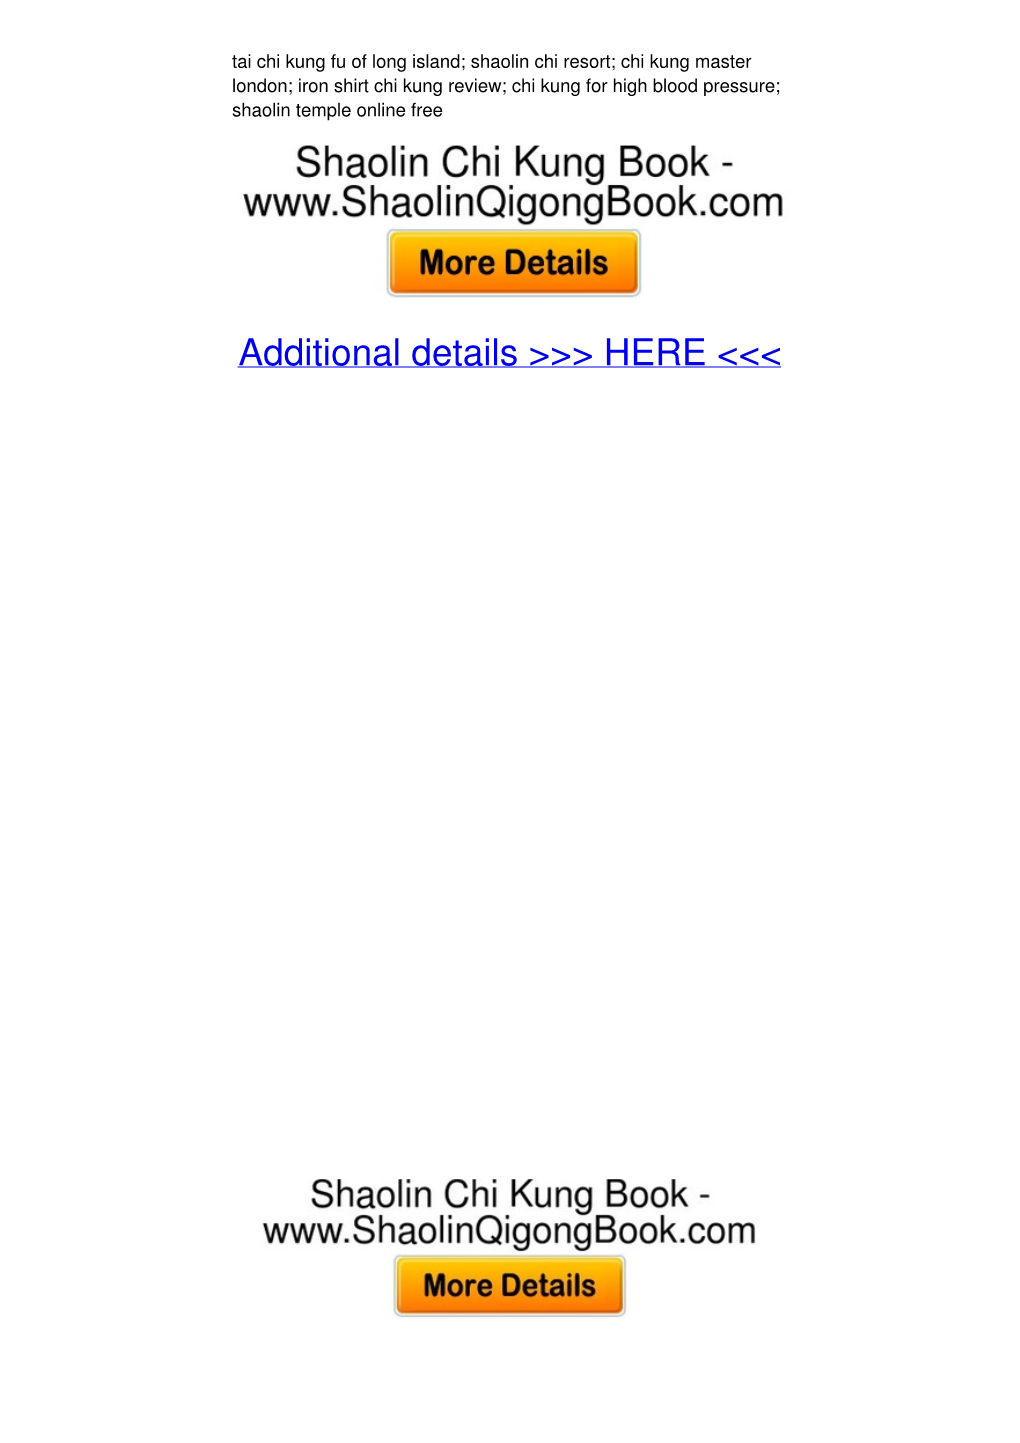 Chi Kung Da Camisa De Ferro Pdf Download -- Shaolin Temple Strikes